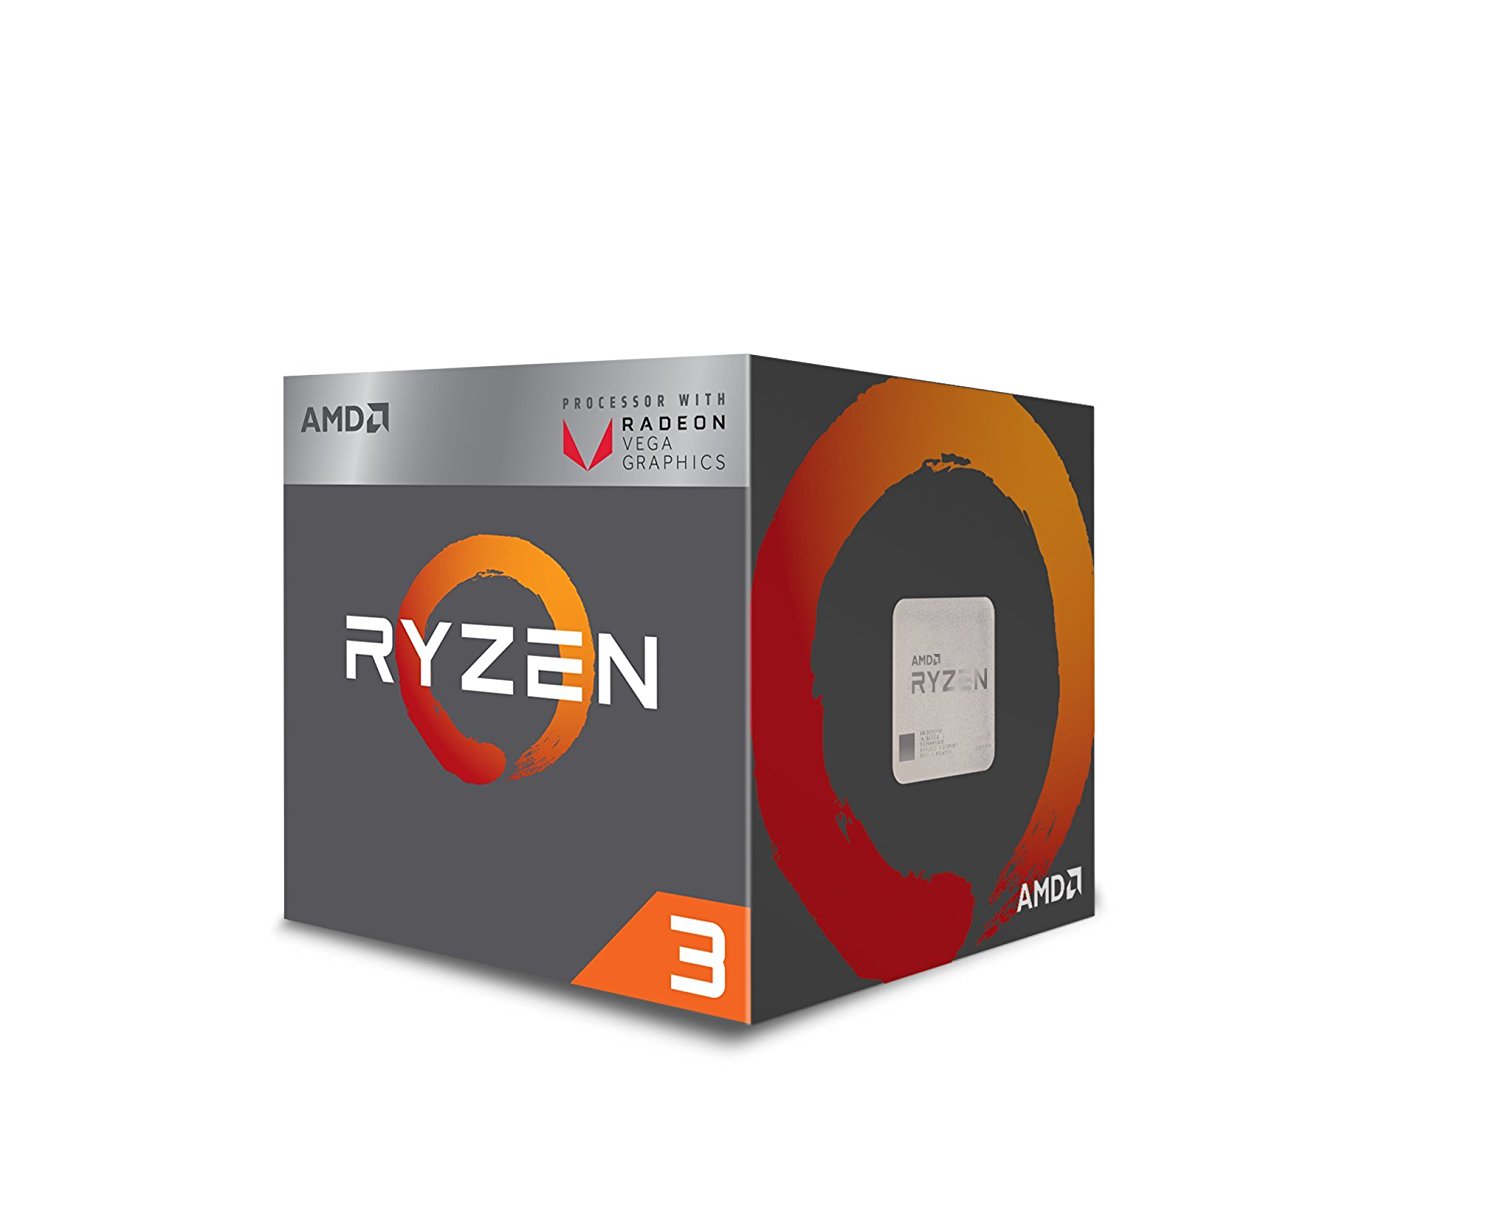 Immagine pubblicata in relazione al seguente contenuto: AMD lancia le APU Raven Ridge per desktop Ryzen 5 2400G e Ryzen 3 2200G | Nome immagine: news27852_Ryzen-5-2400G-Ryzen-3-2200G_7.jpg